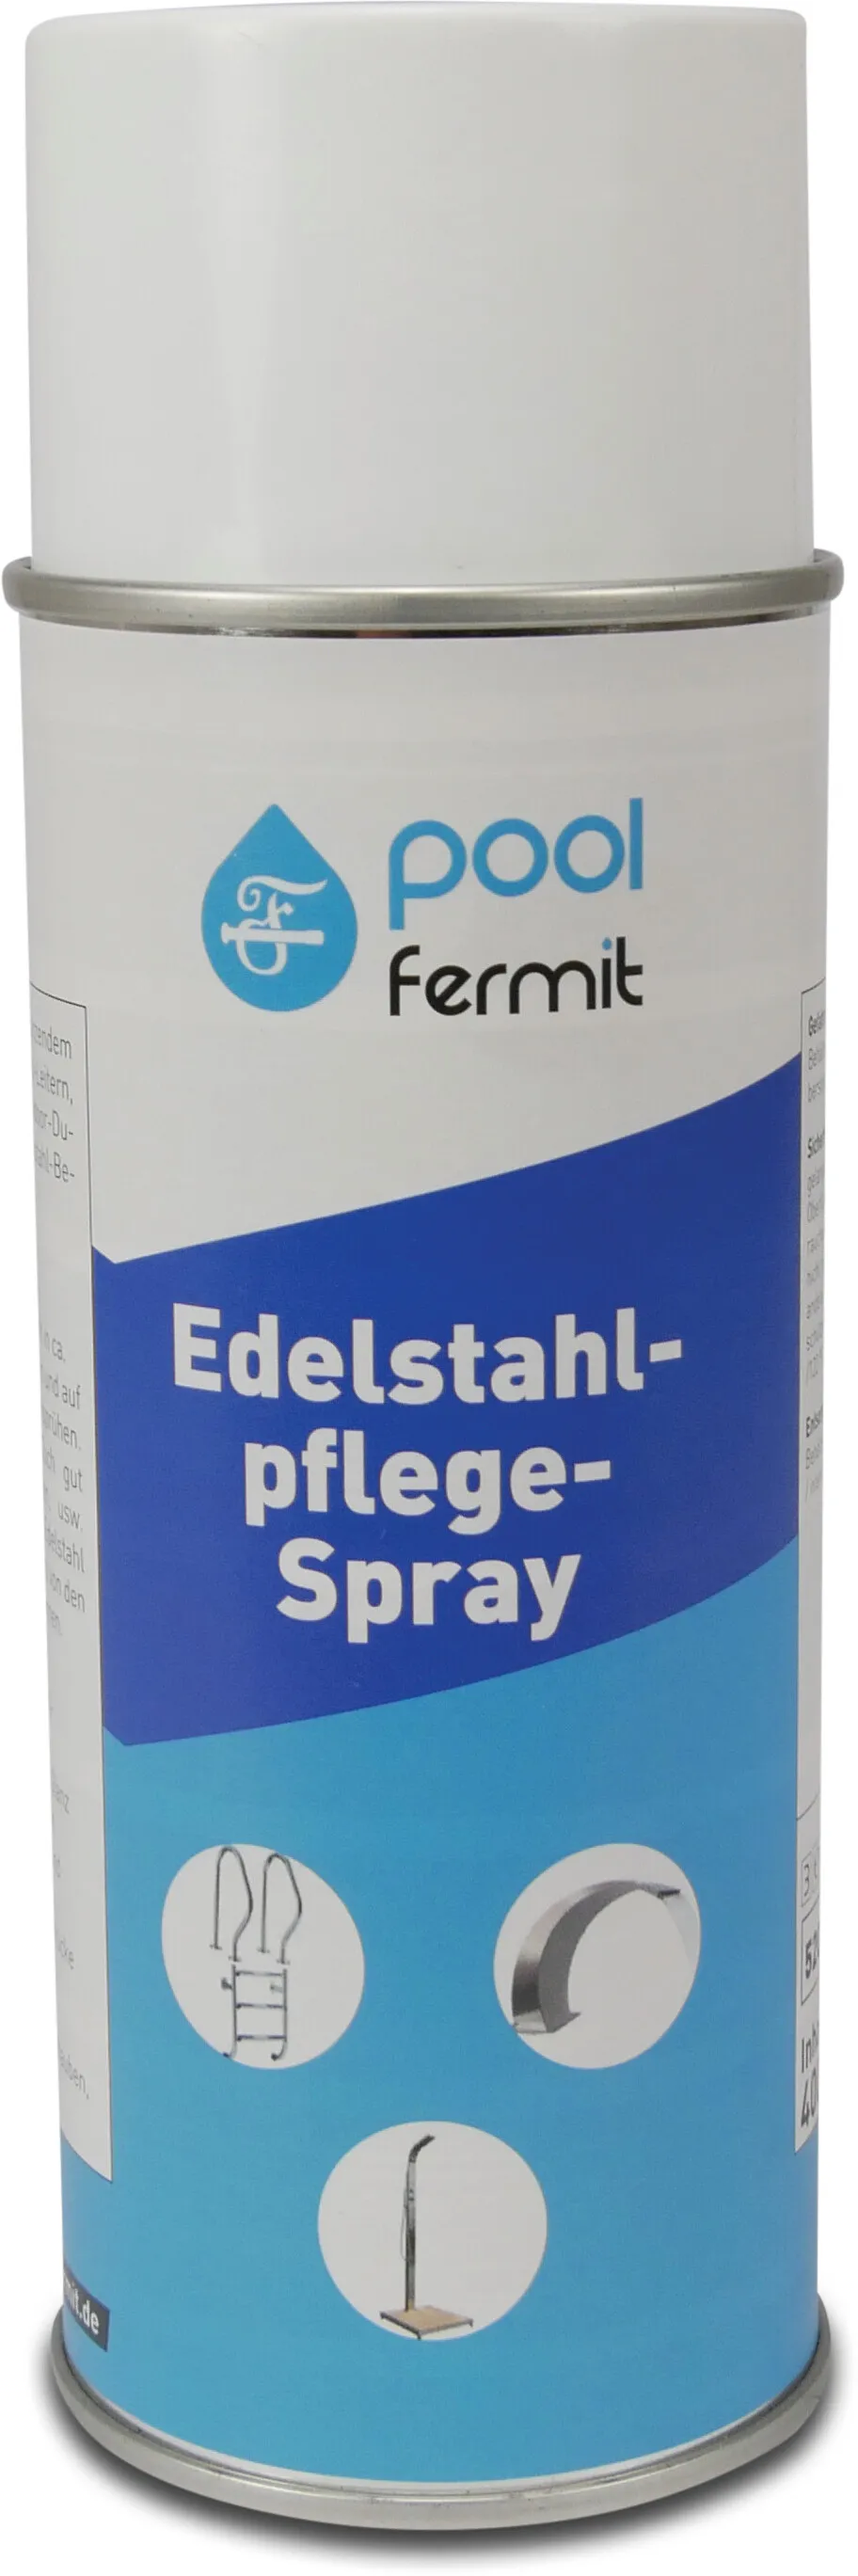 Edelstahl-Pflegespray 0.4ltr